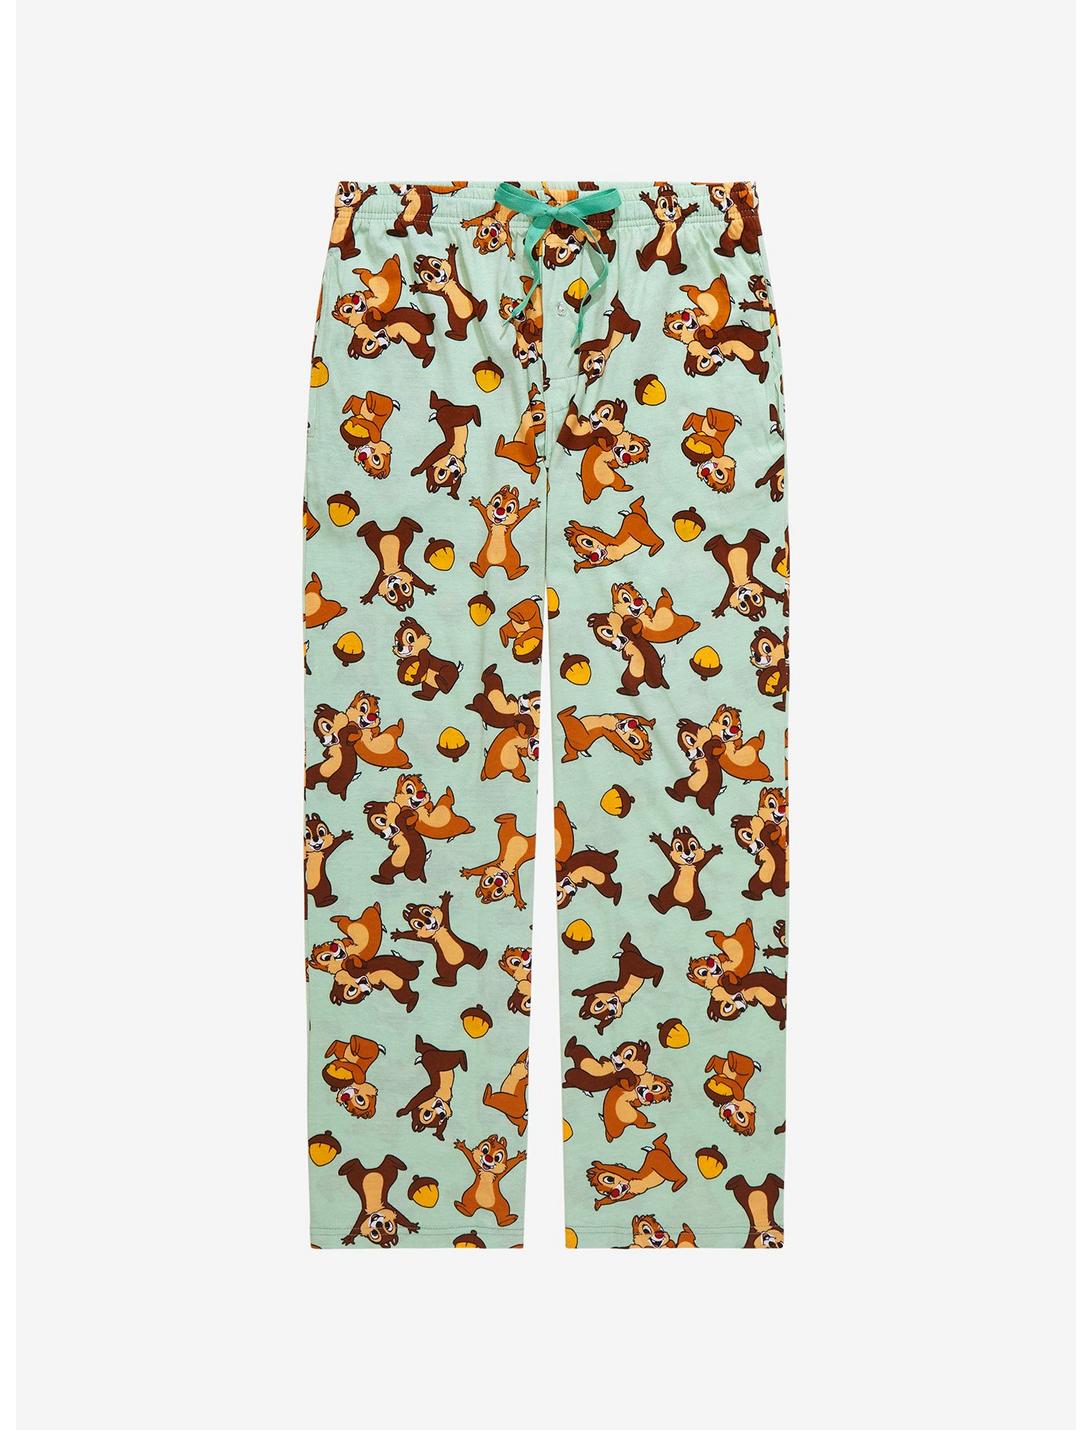 Disney Chip ‘N’ Dale Allover Print Pajama Pants, MULTI, hi-res